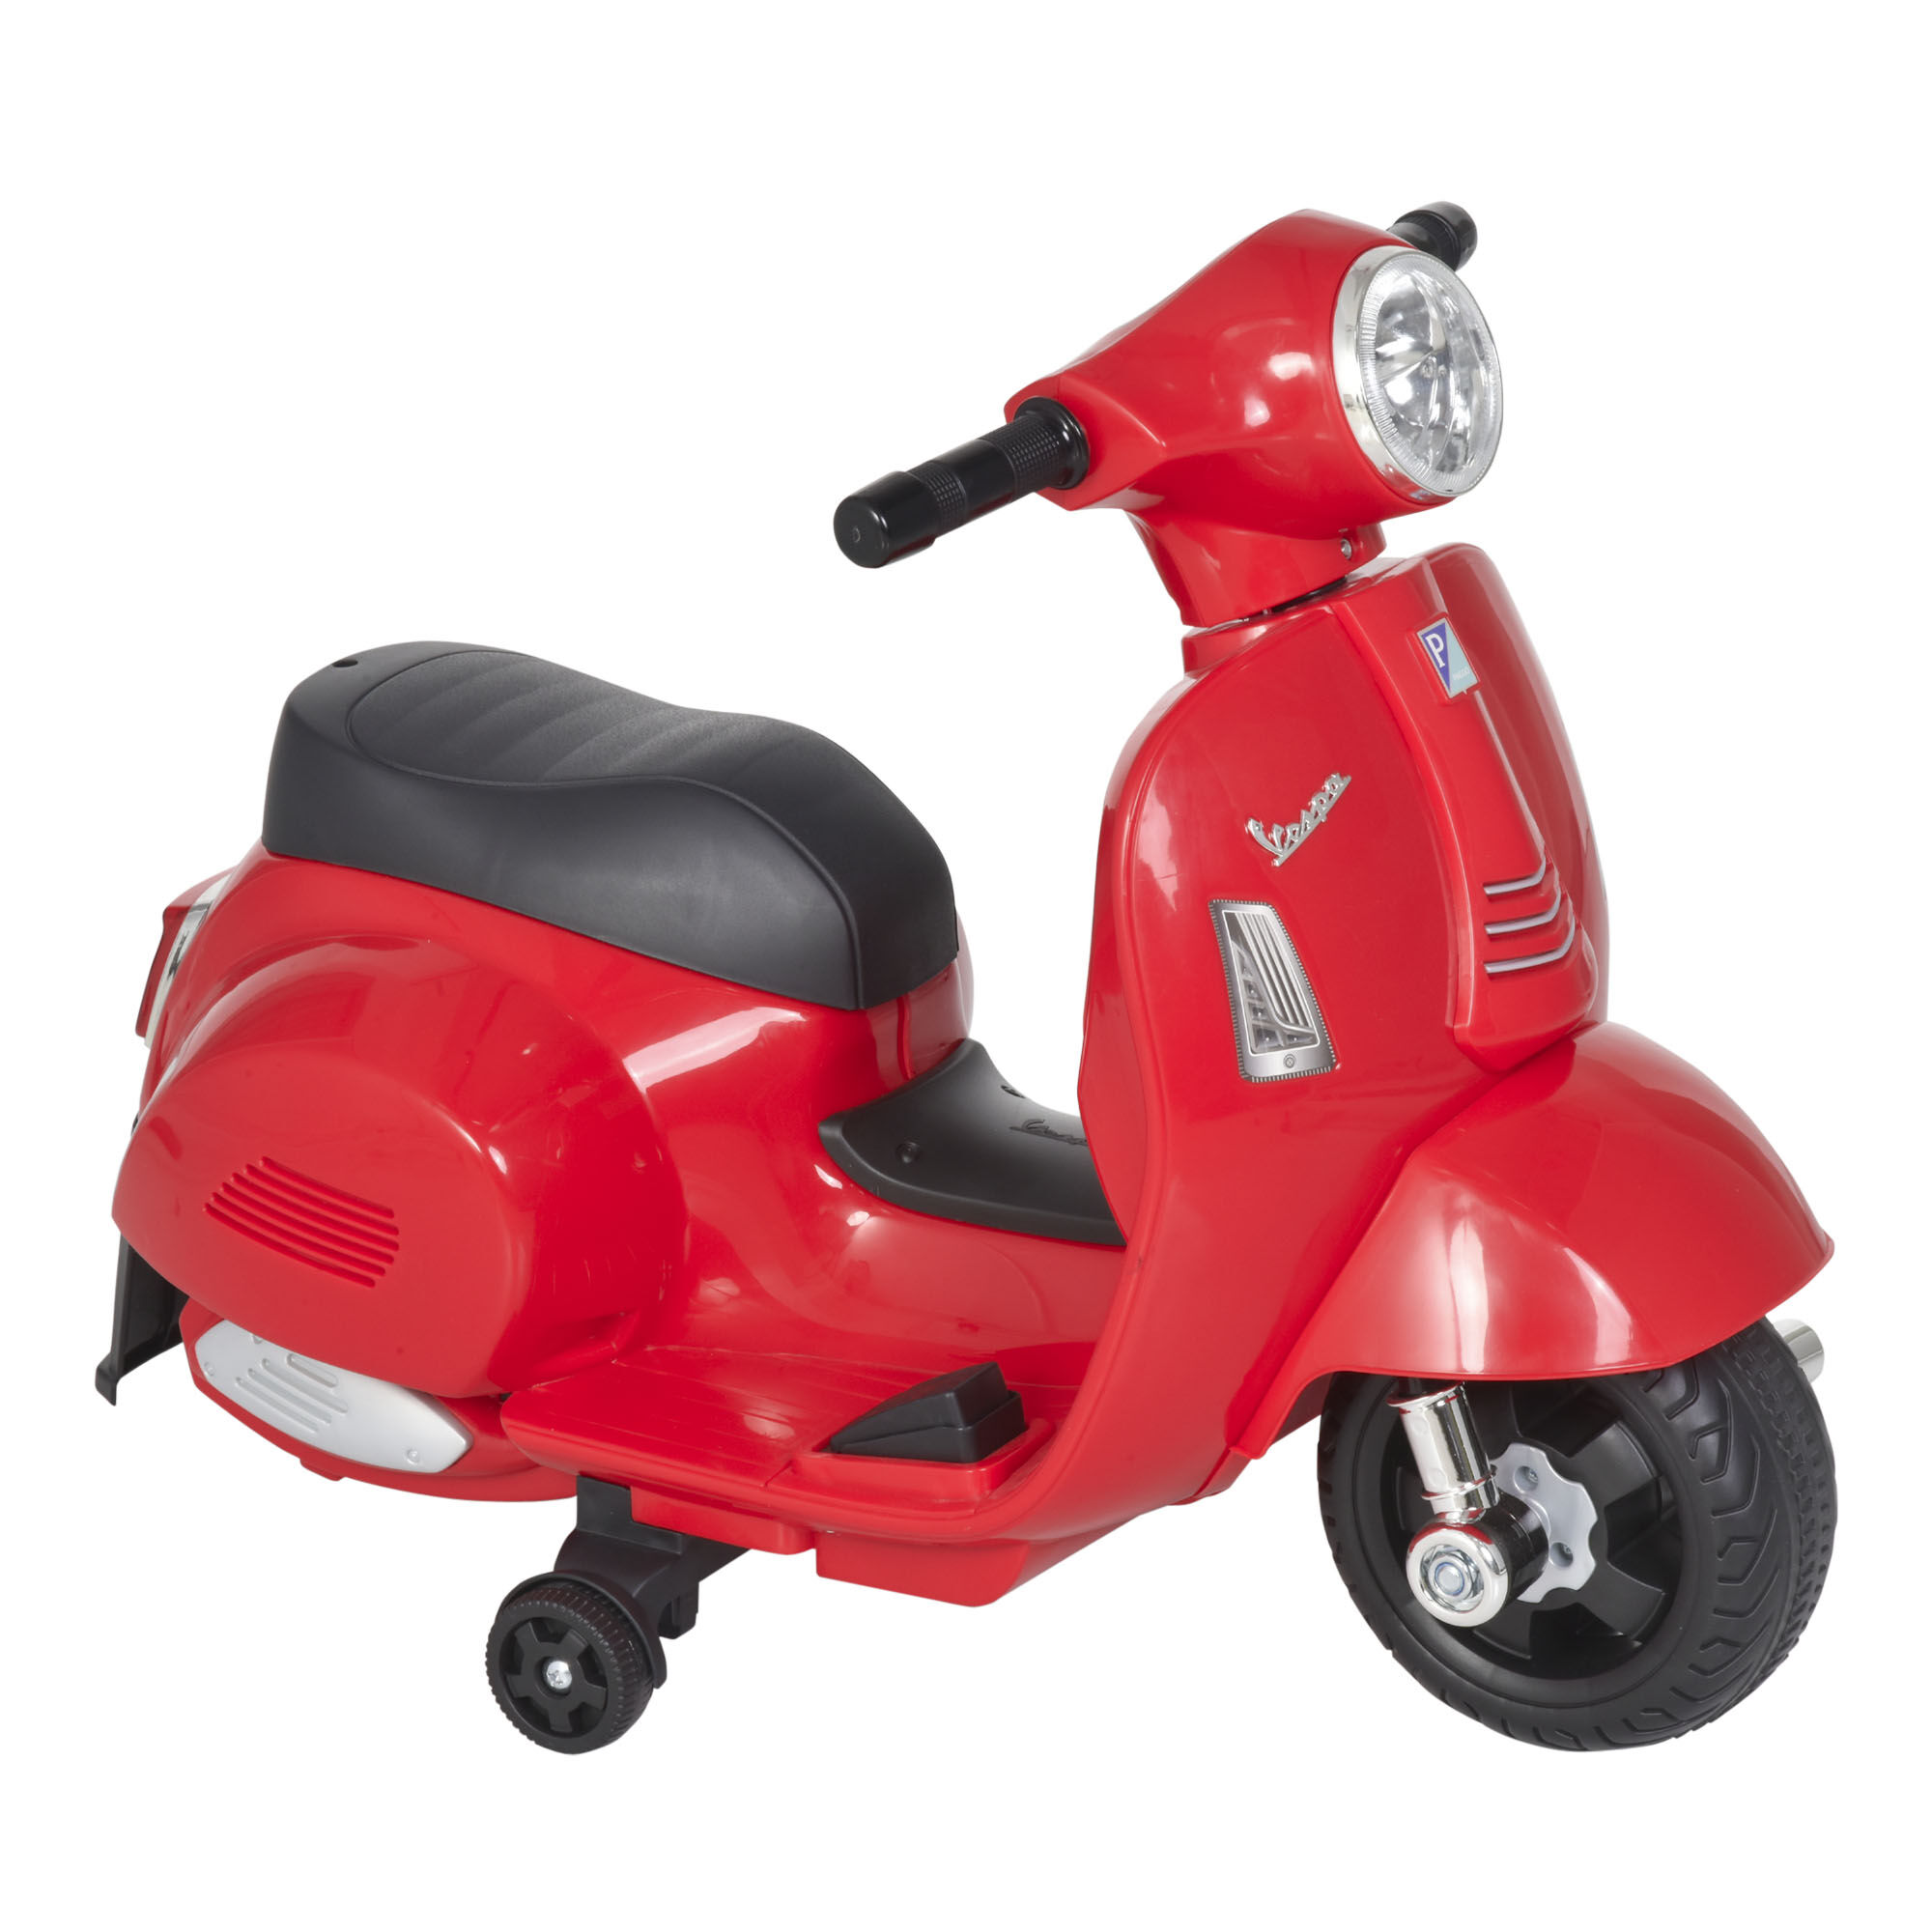 Homcom Moto Elettrica per Bambini con Licenza Ufficiale Vespa Batteria 6V, Fari e Clacson, per Bimbi da 18-36 mesi, Rosso, 66.5x38x52cm